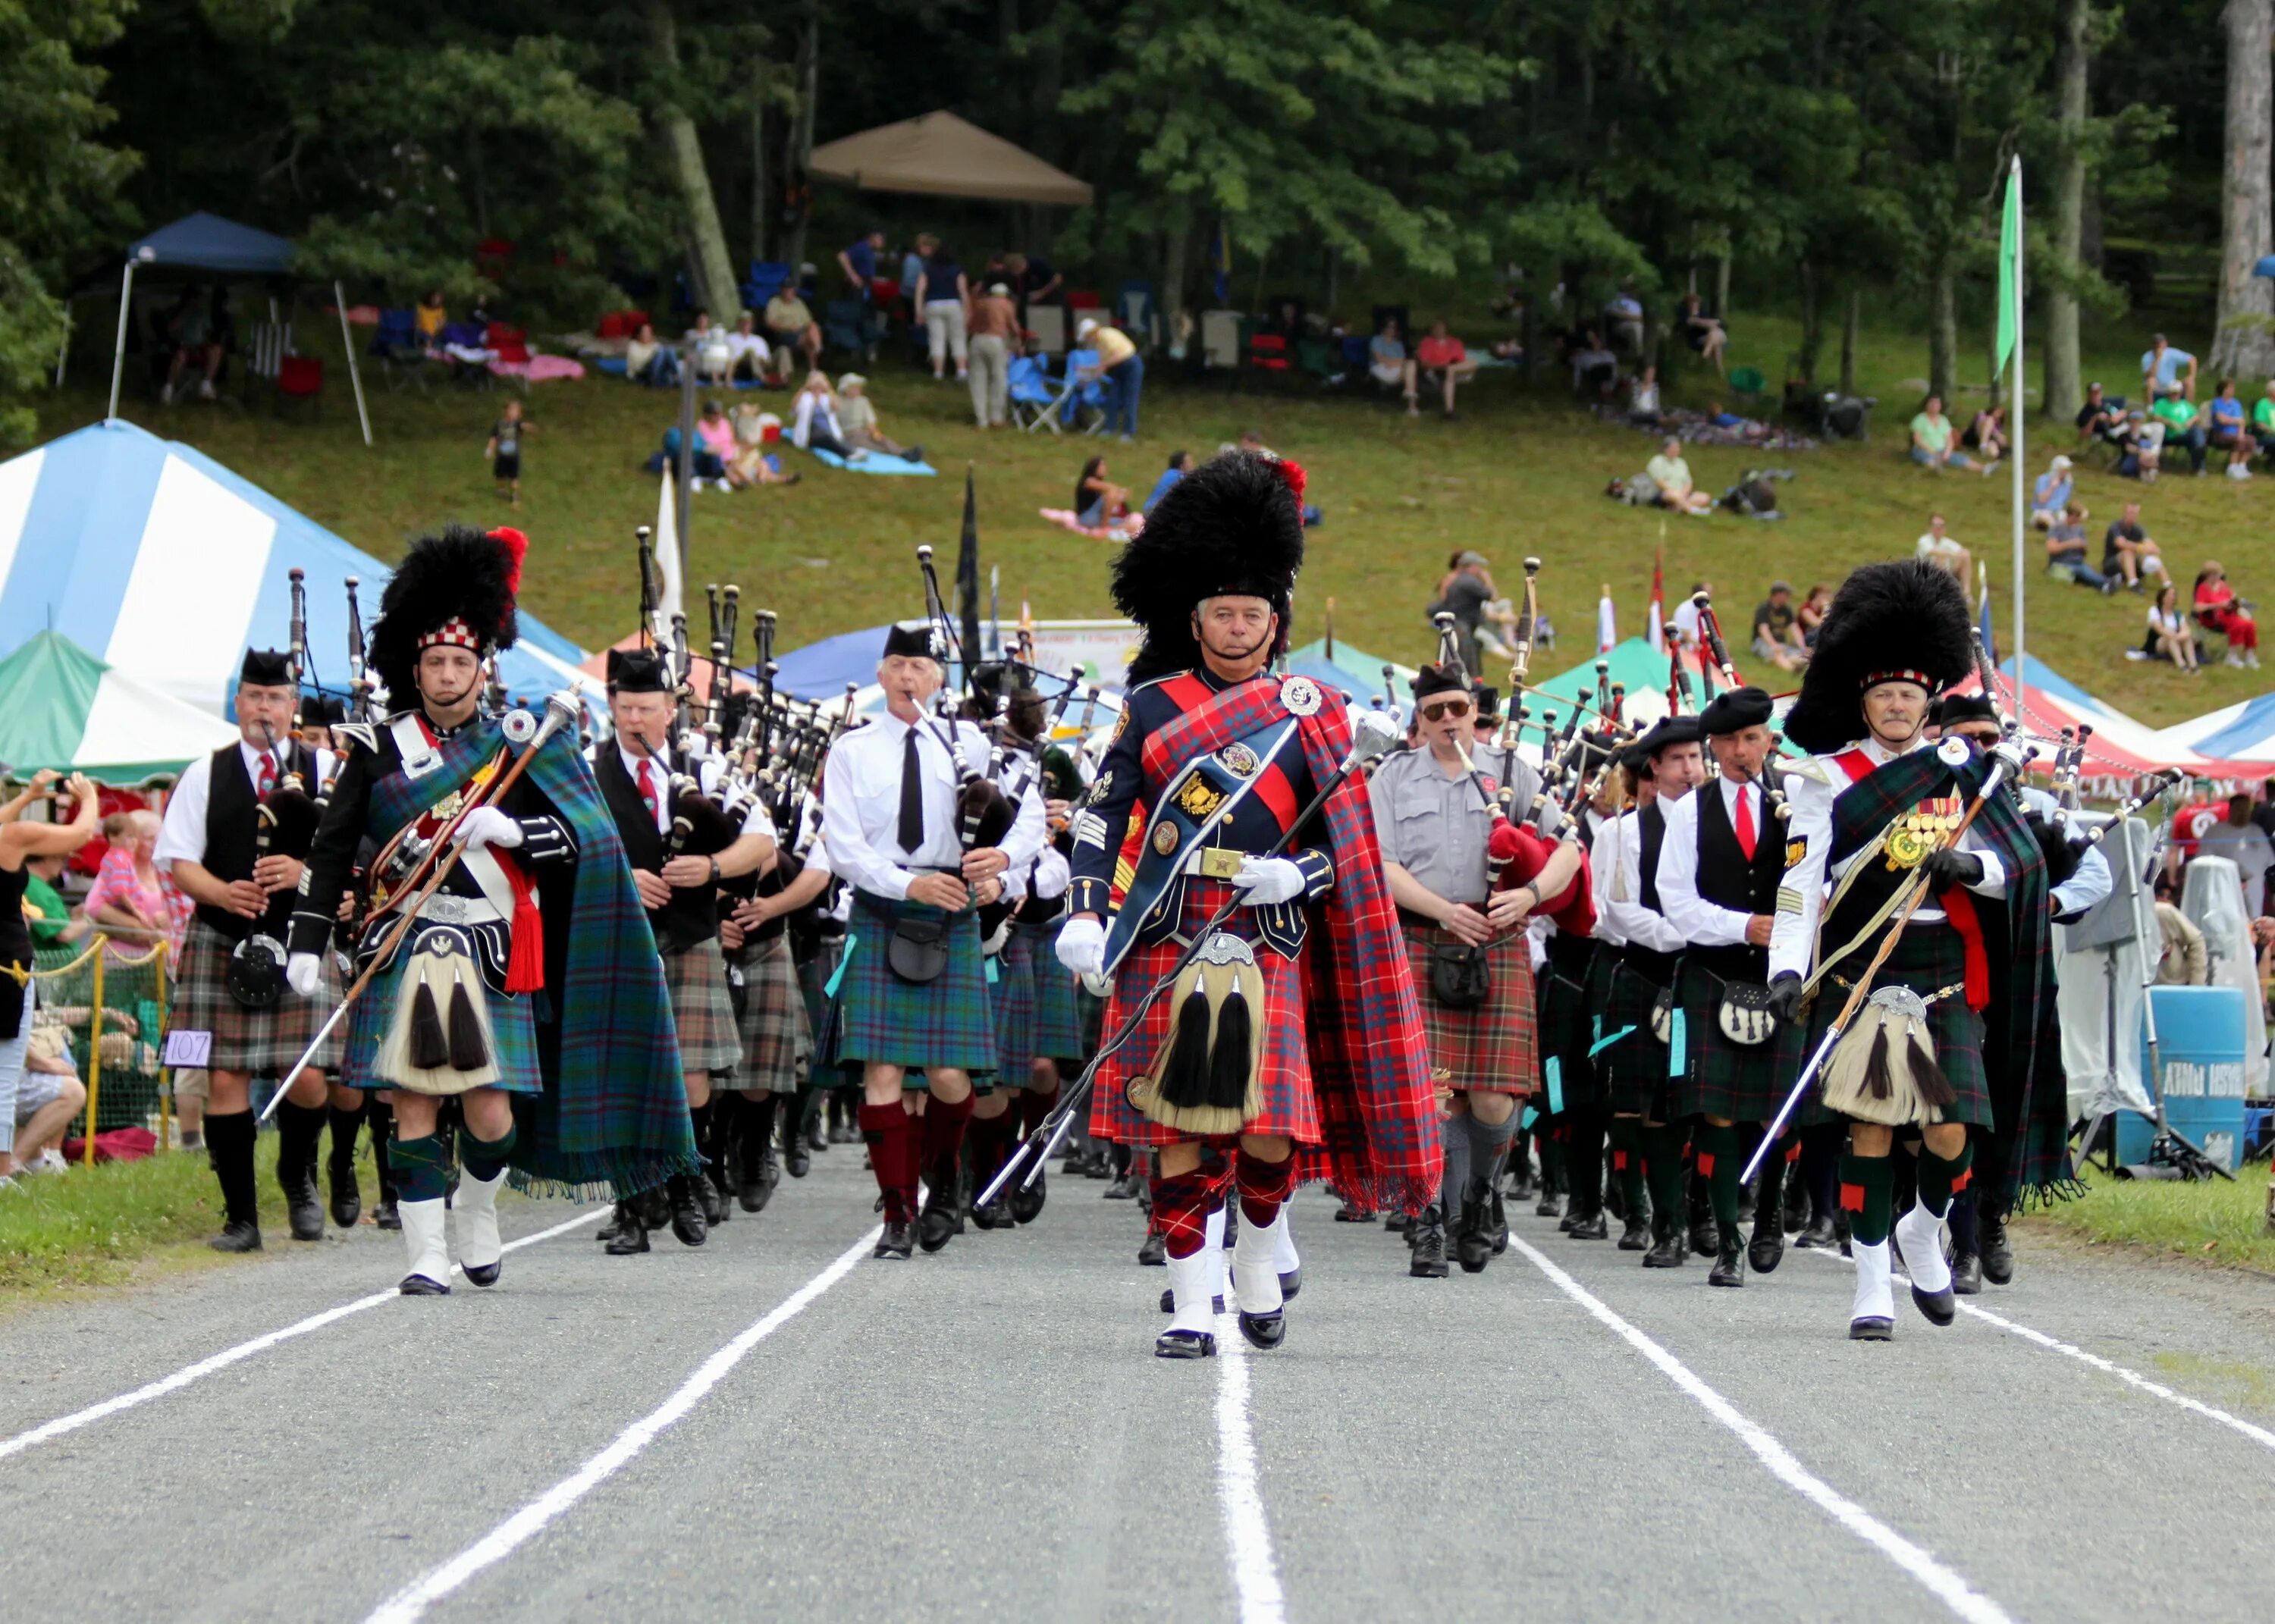 People live in scotland. Игры Горцев в Шотландии. Фестиваль Highland Gatherings в Шотландии. Шотландцы нация. Этнос шотландцев.